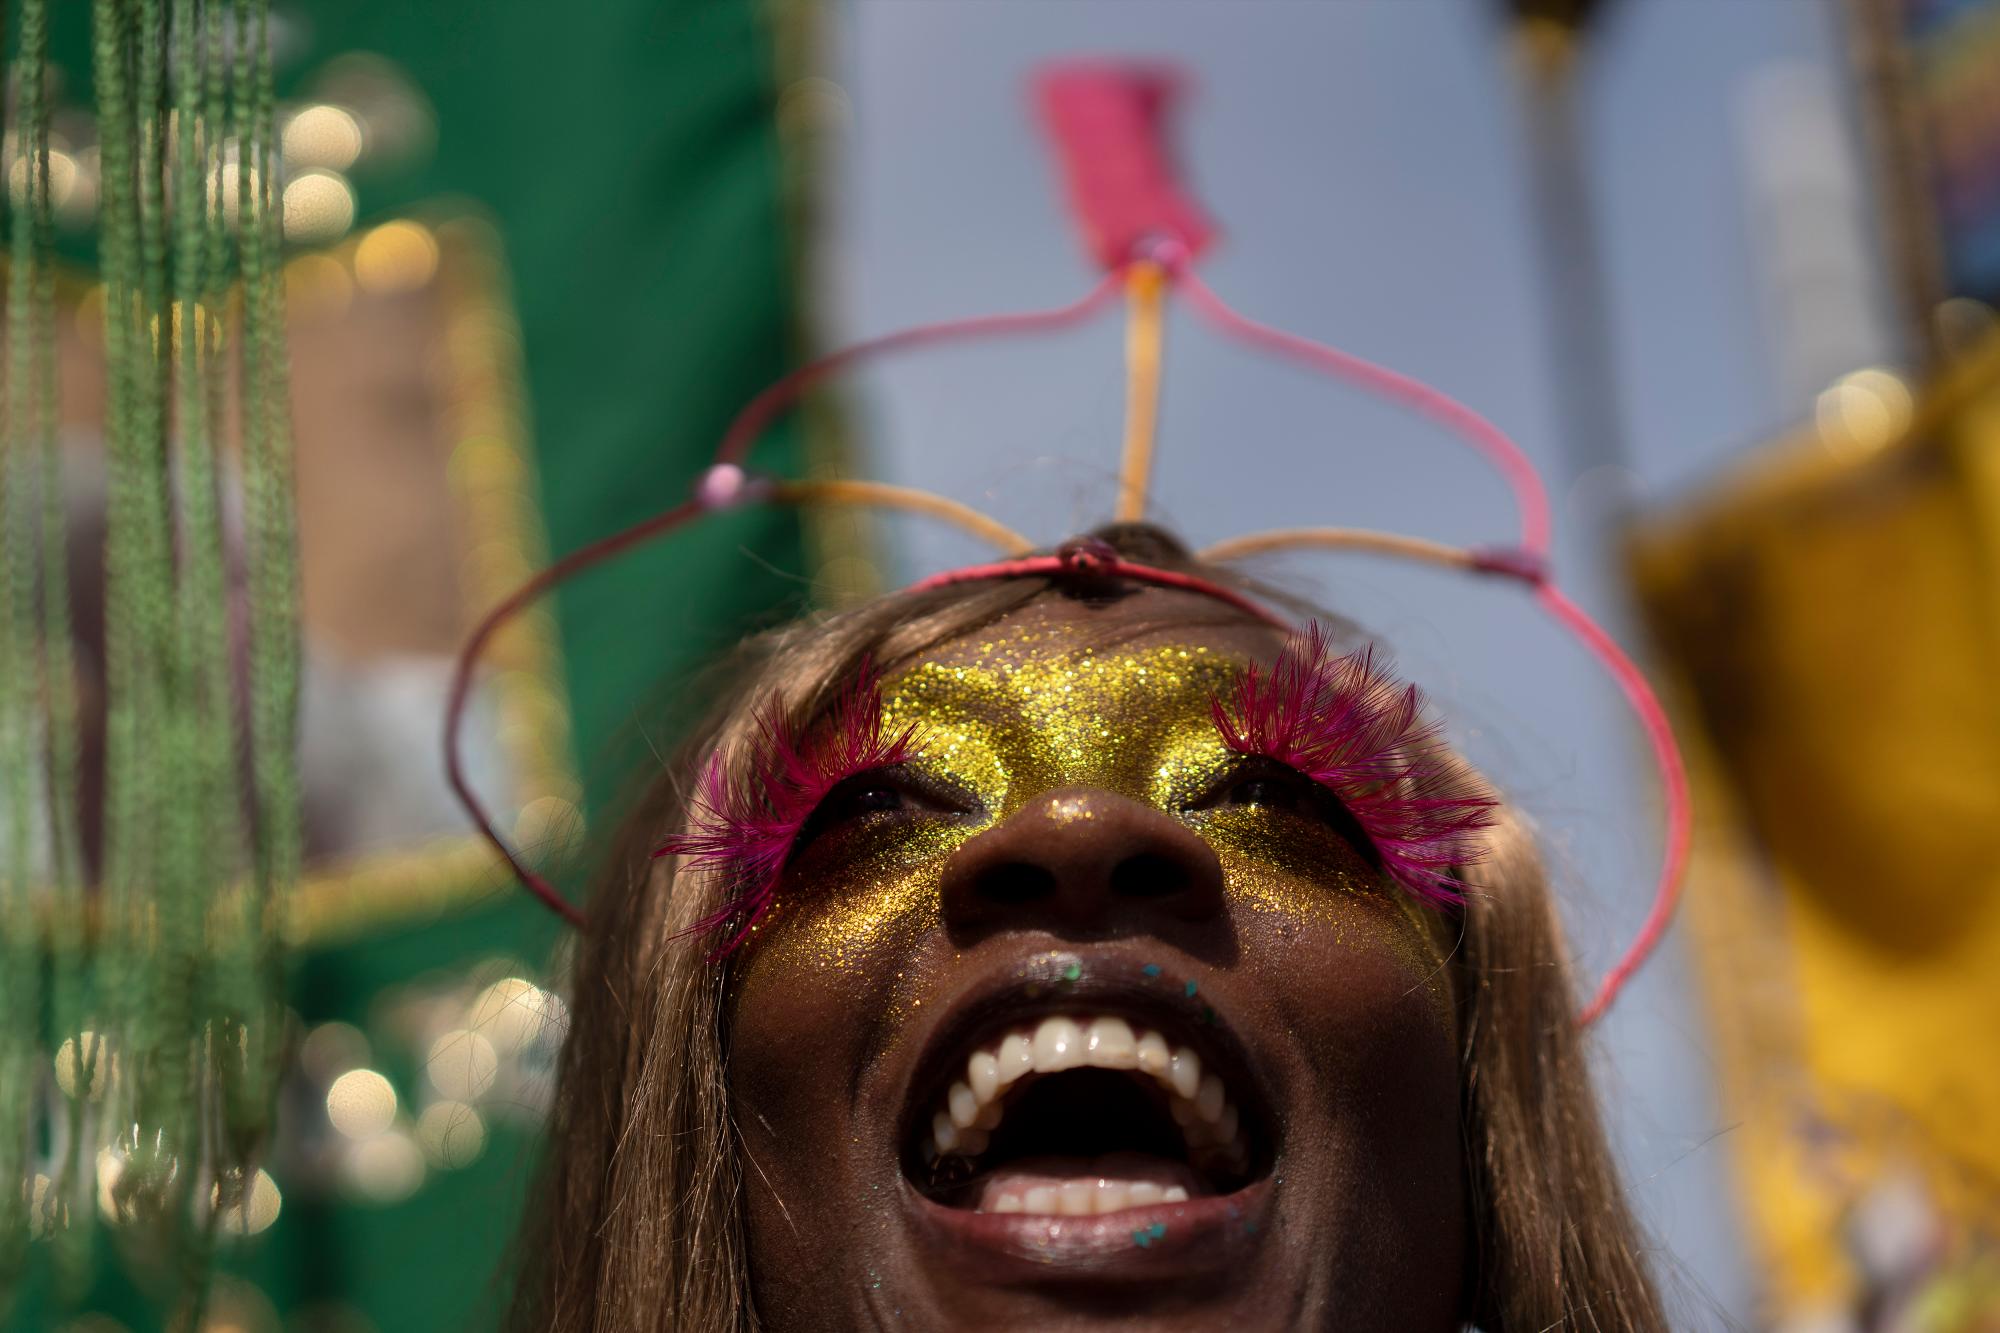 Un participante disfrazado disfruta de la fiesta callejera “Cordao do Boitata”, uno de los muchos desfiles antes del inicio del Carnaval que comienza el 21 de febrero, en Río de Janeiro, Brasil, el domingo 16 de febrero de 2020. (Foto AP / Leo Correa)